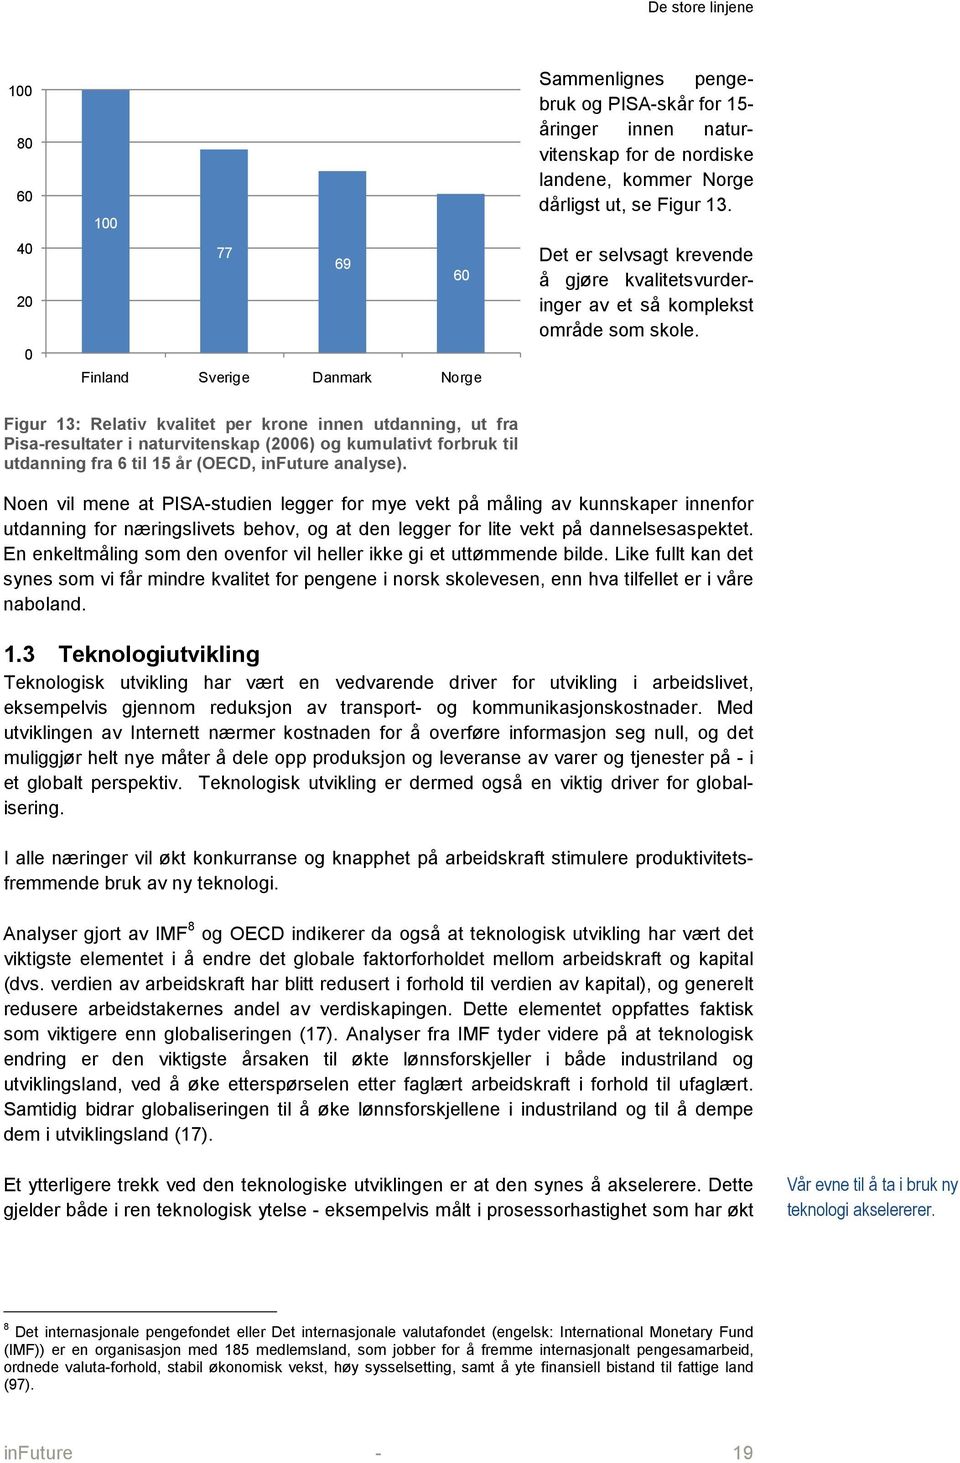 Figur 13: Relativ kvalitet per krone innen utdanning, ut fra Pisa-resultater i naturvitenskap (2006) og kumulativt forbruk til utdanning fra 6 til 15 år (OECD, infuture analyse).